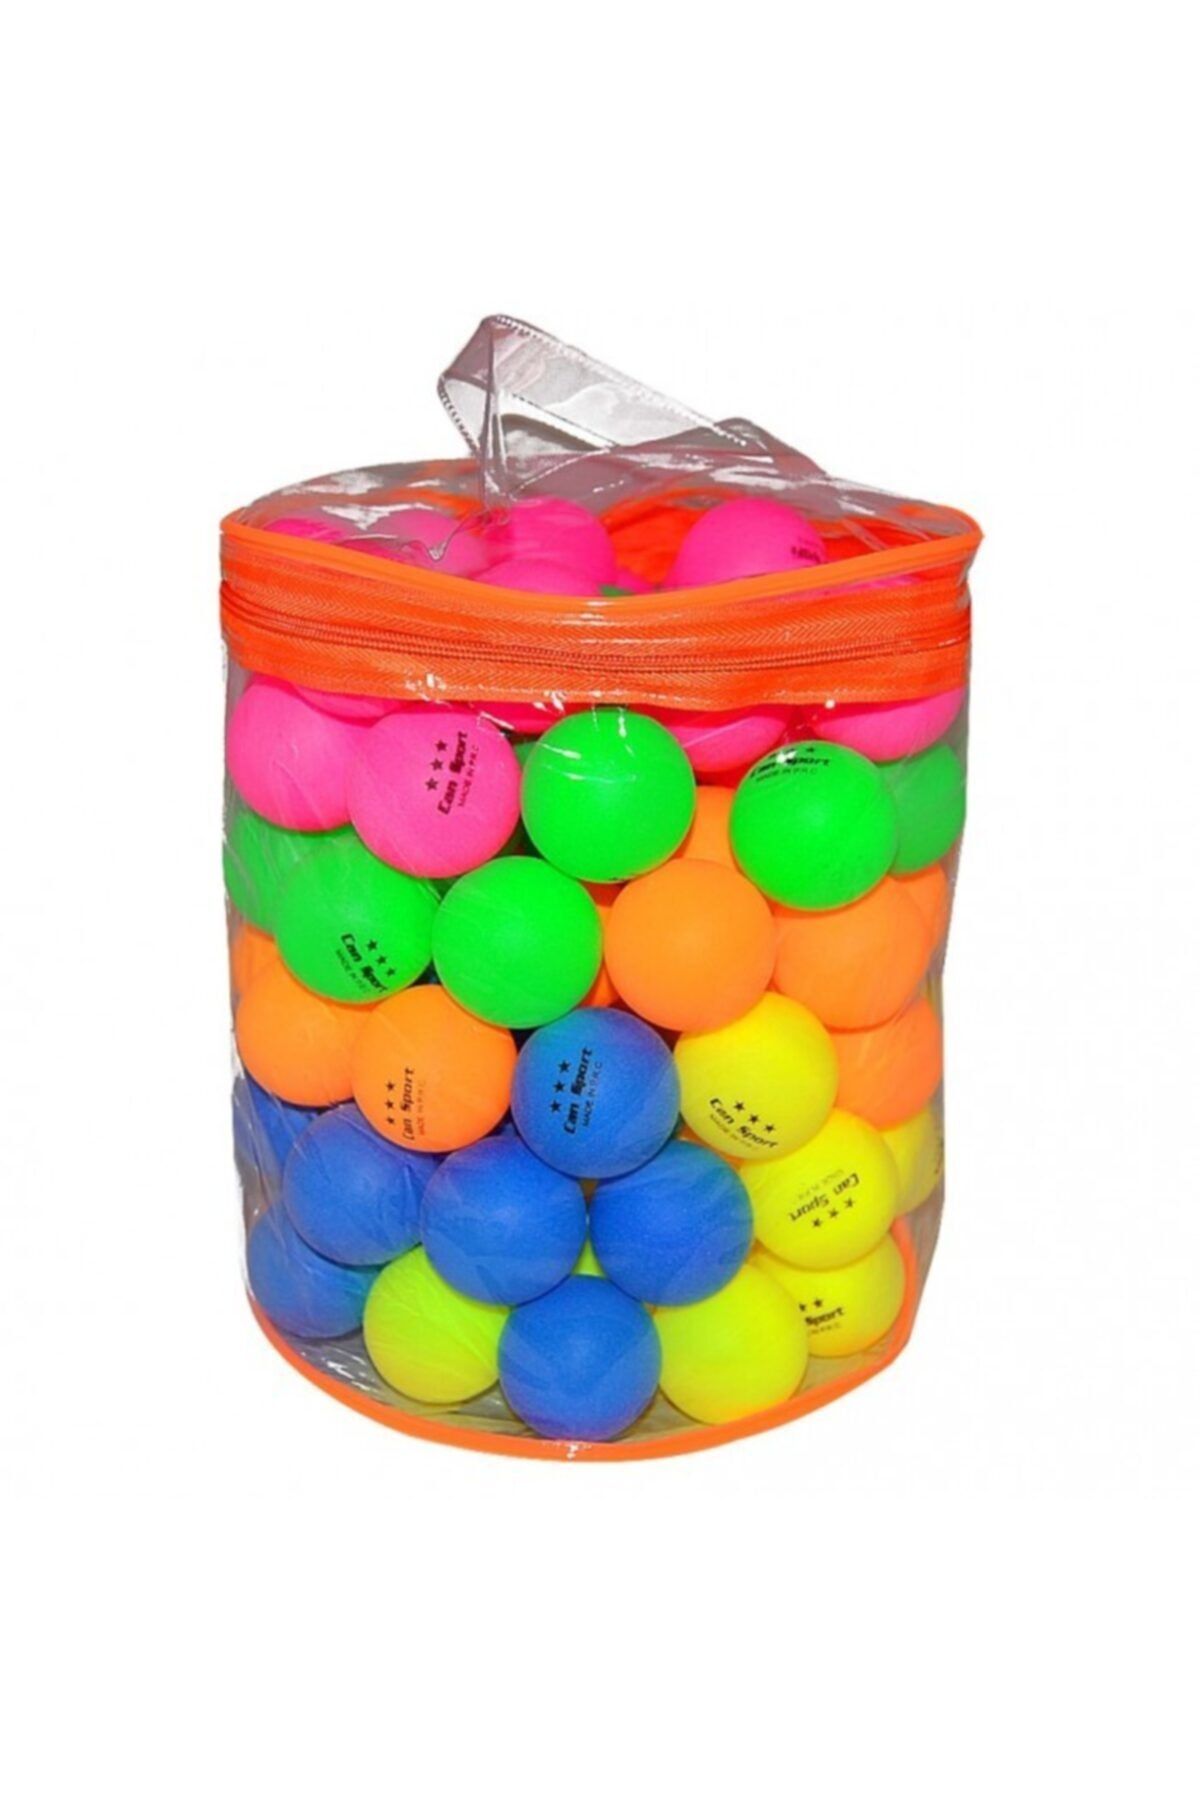 MOYASHOP 100 adet Karışık Renkli Pinpon Topu - Masa Tenisi Topu